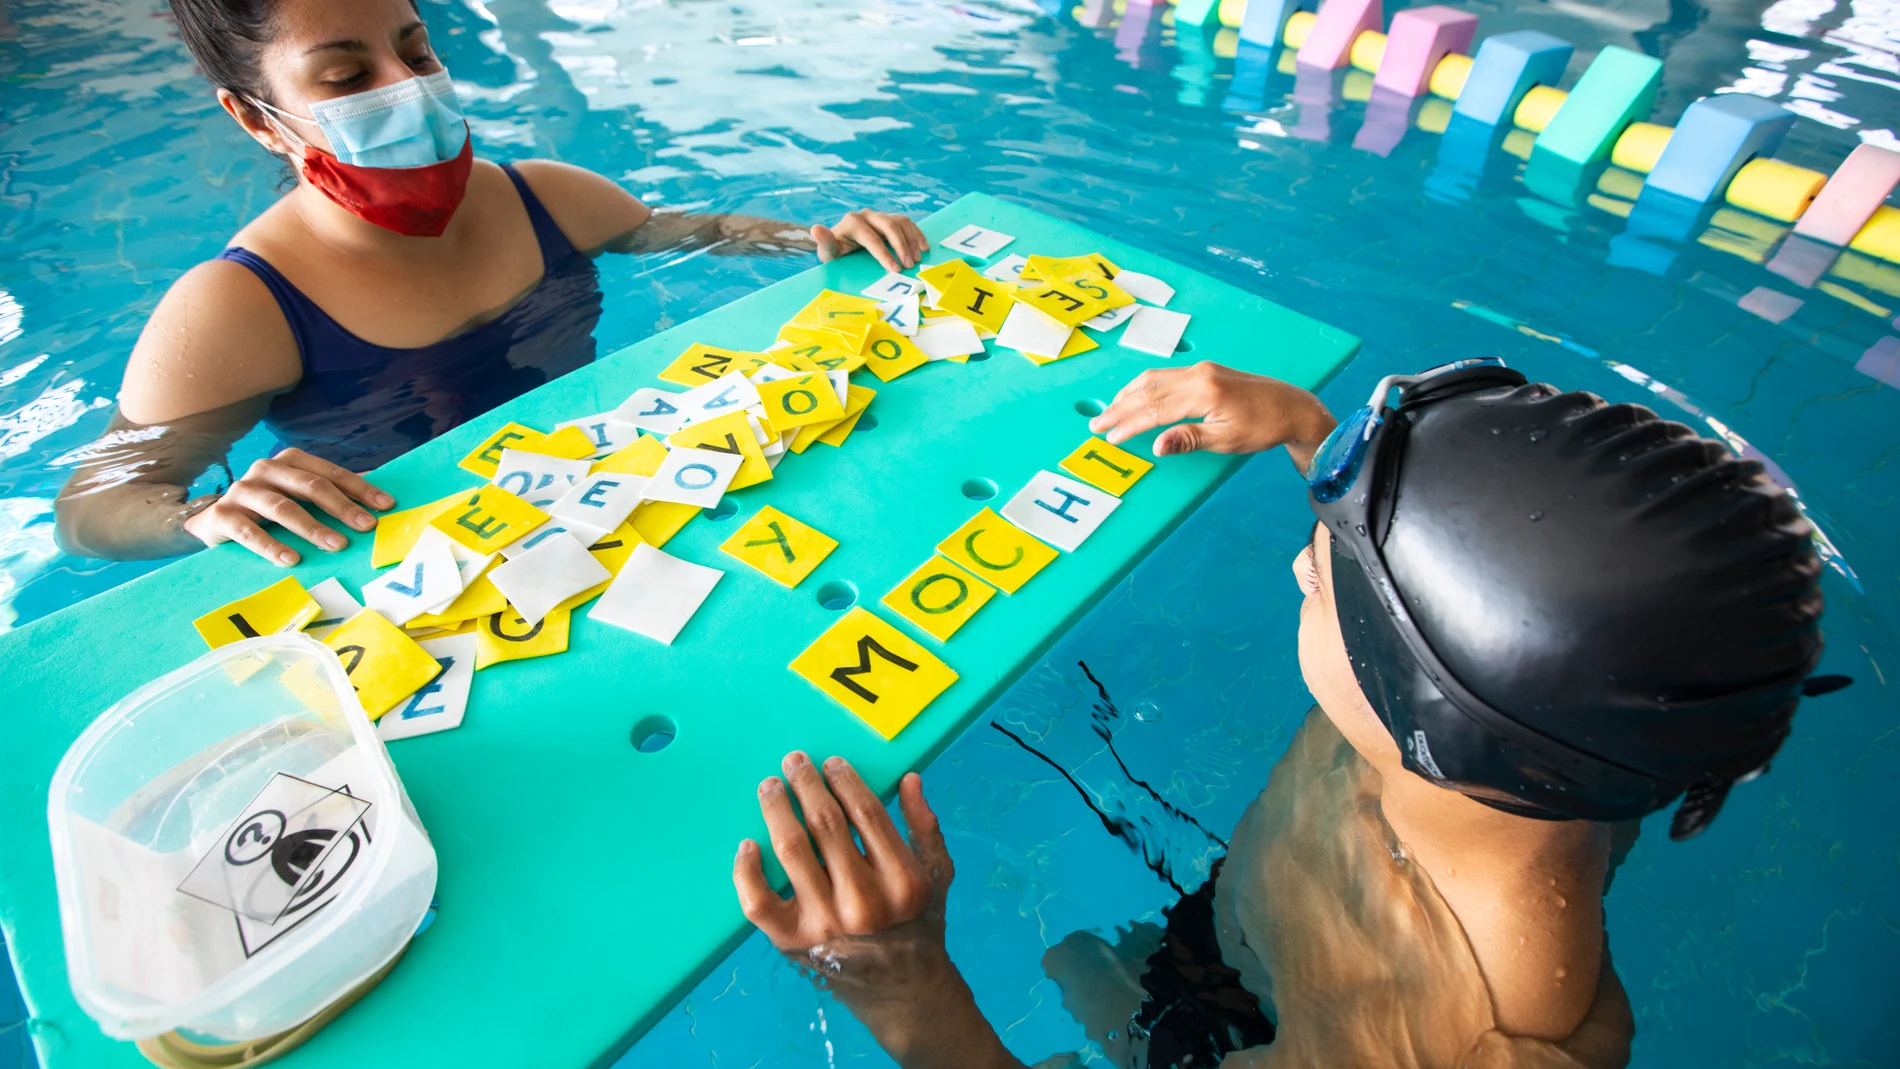 Terapia de desarrollo y aprendizaje en piscina llamado "Poseidon", de la Fundación San José en el colegio para personas con necesidades especiales